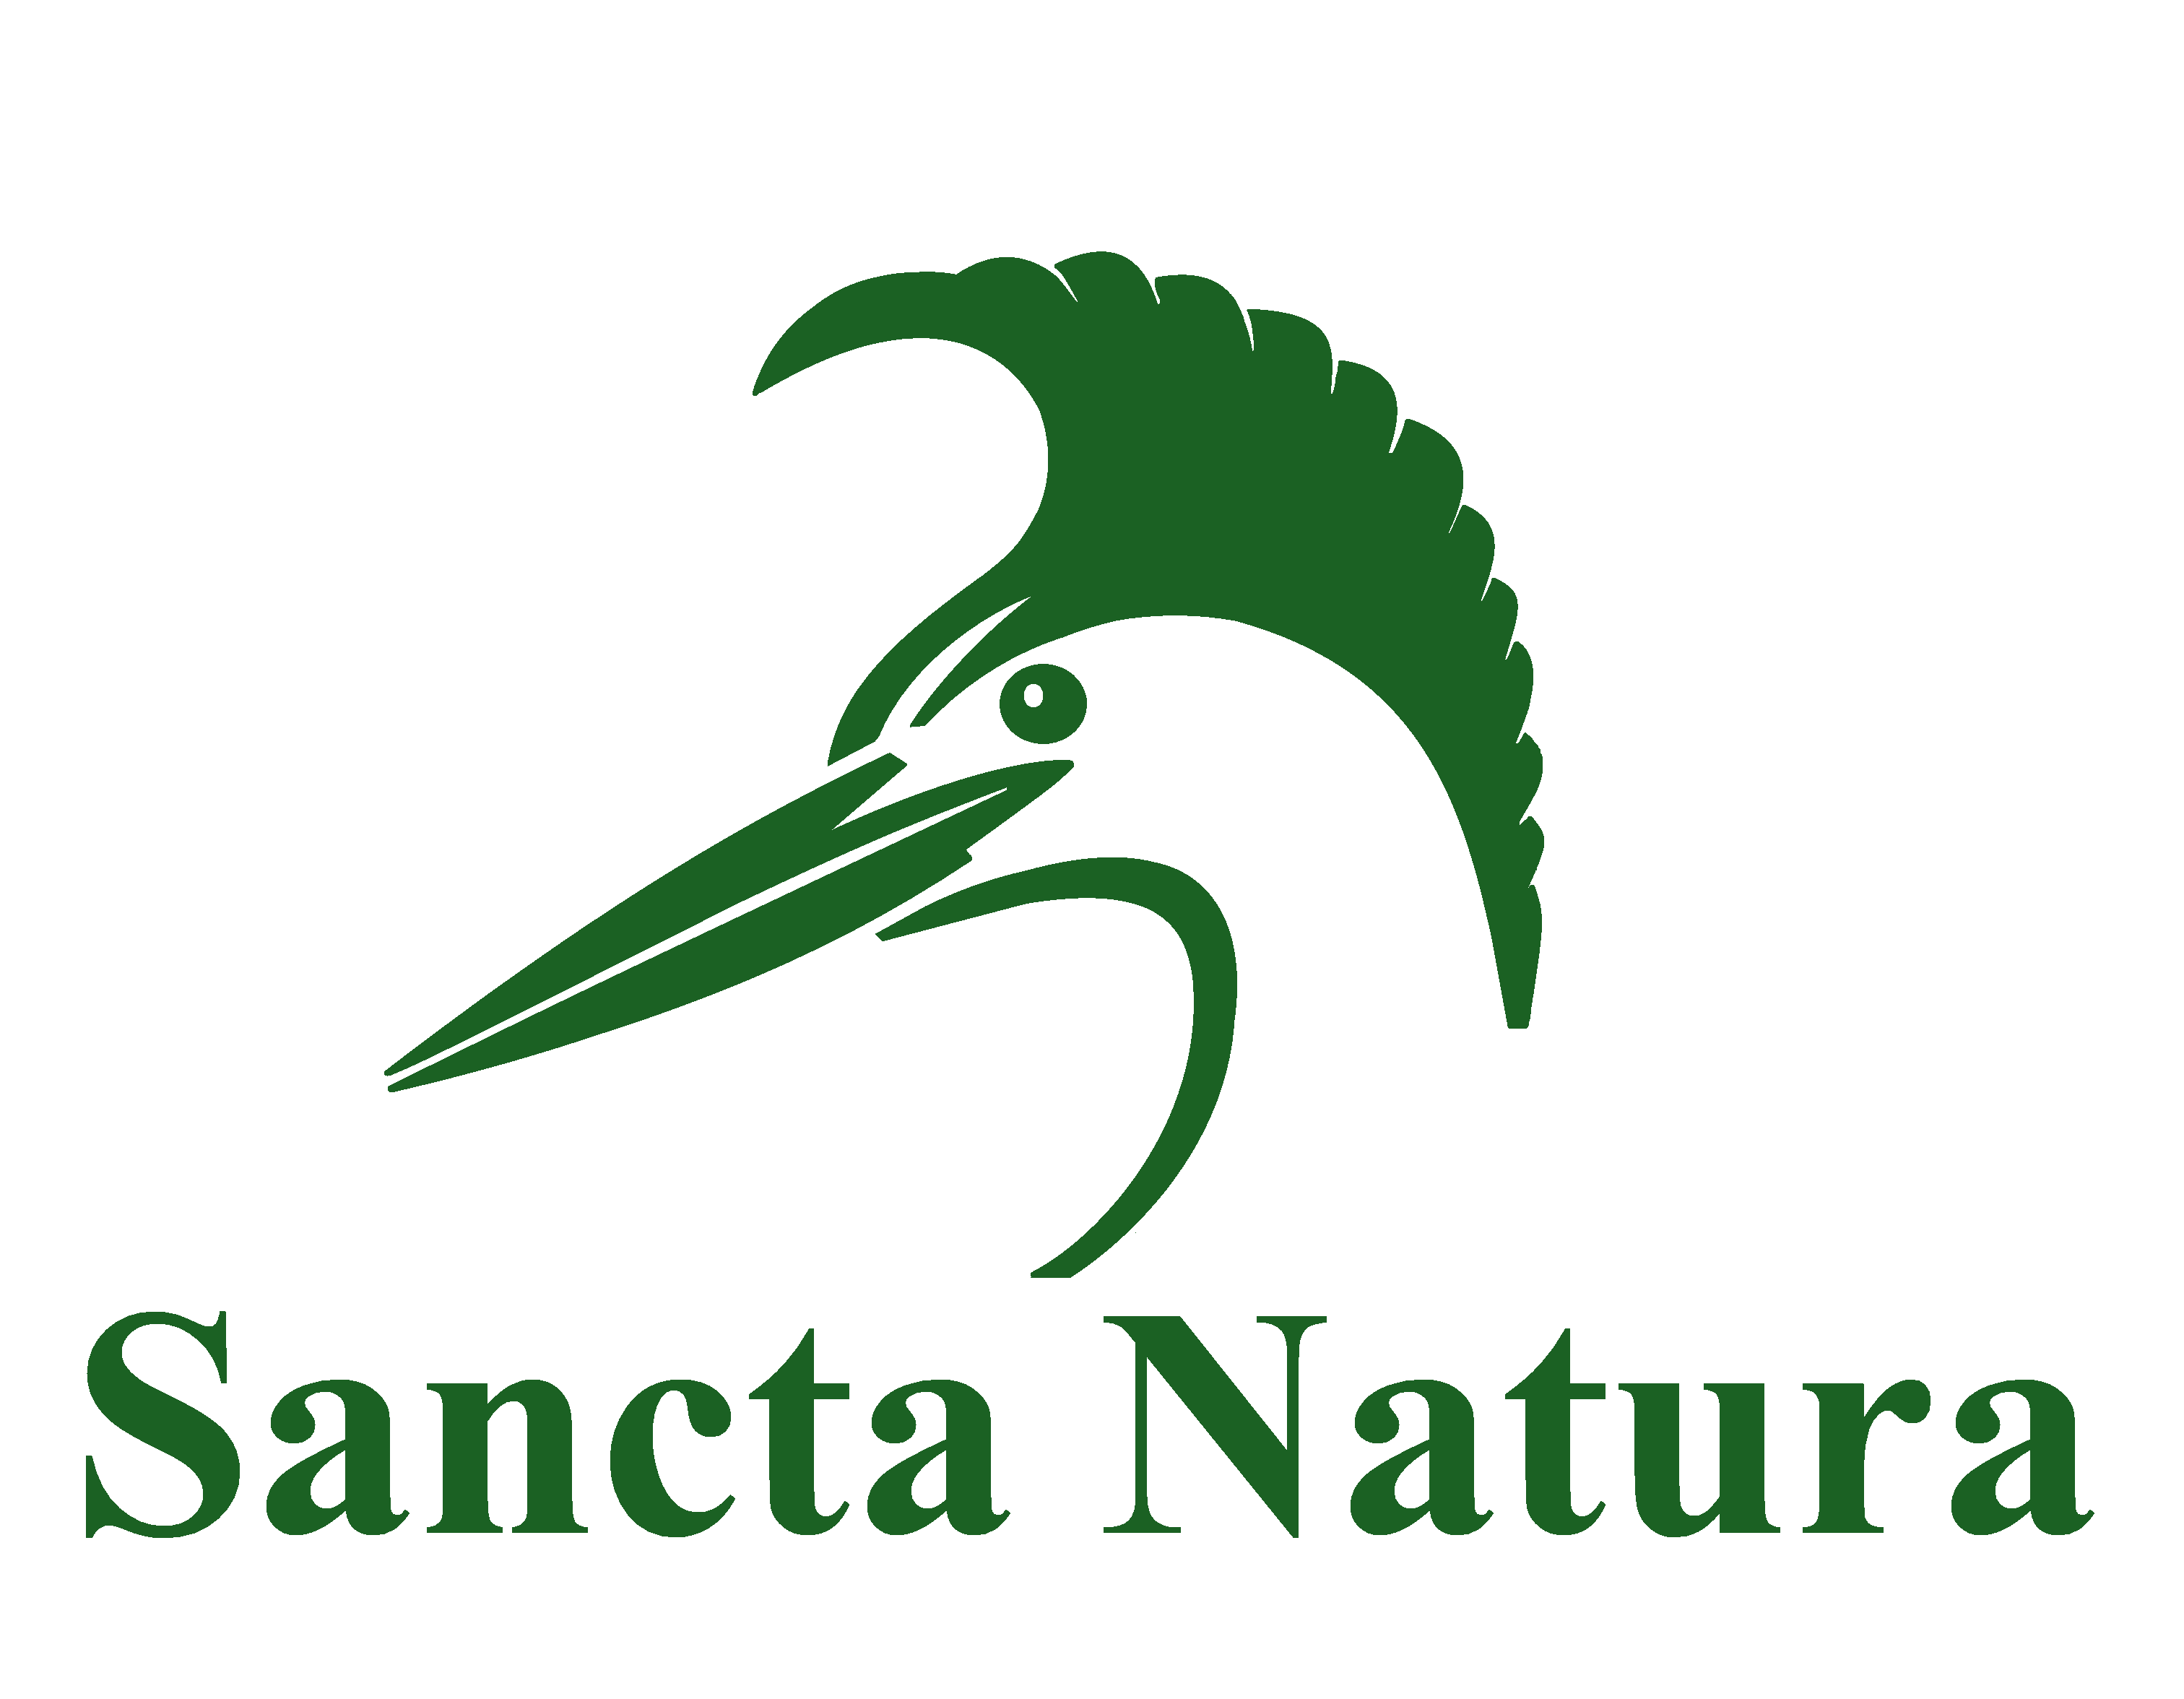 Sancta Natura